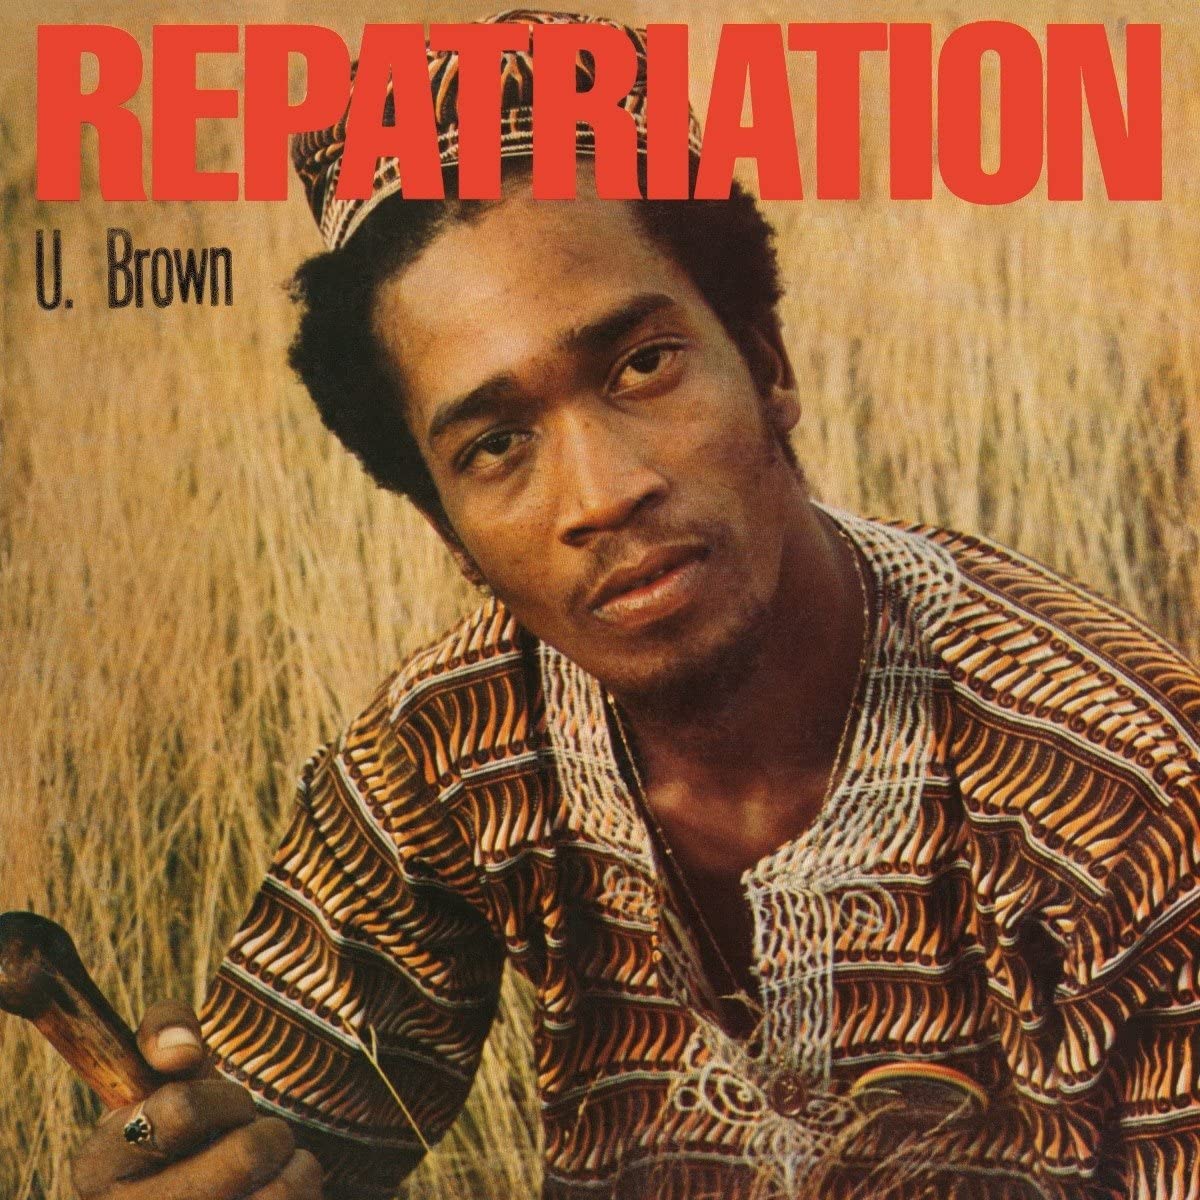 U Brown/Reperation [LP]